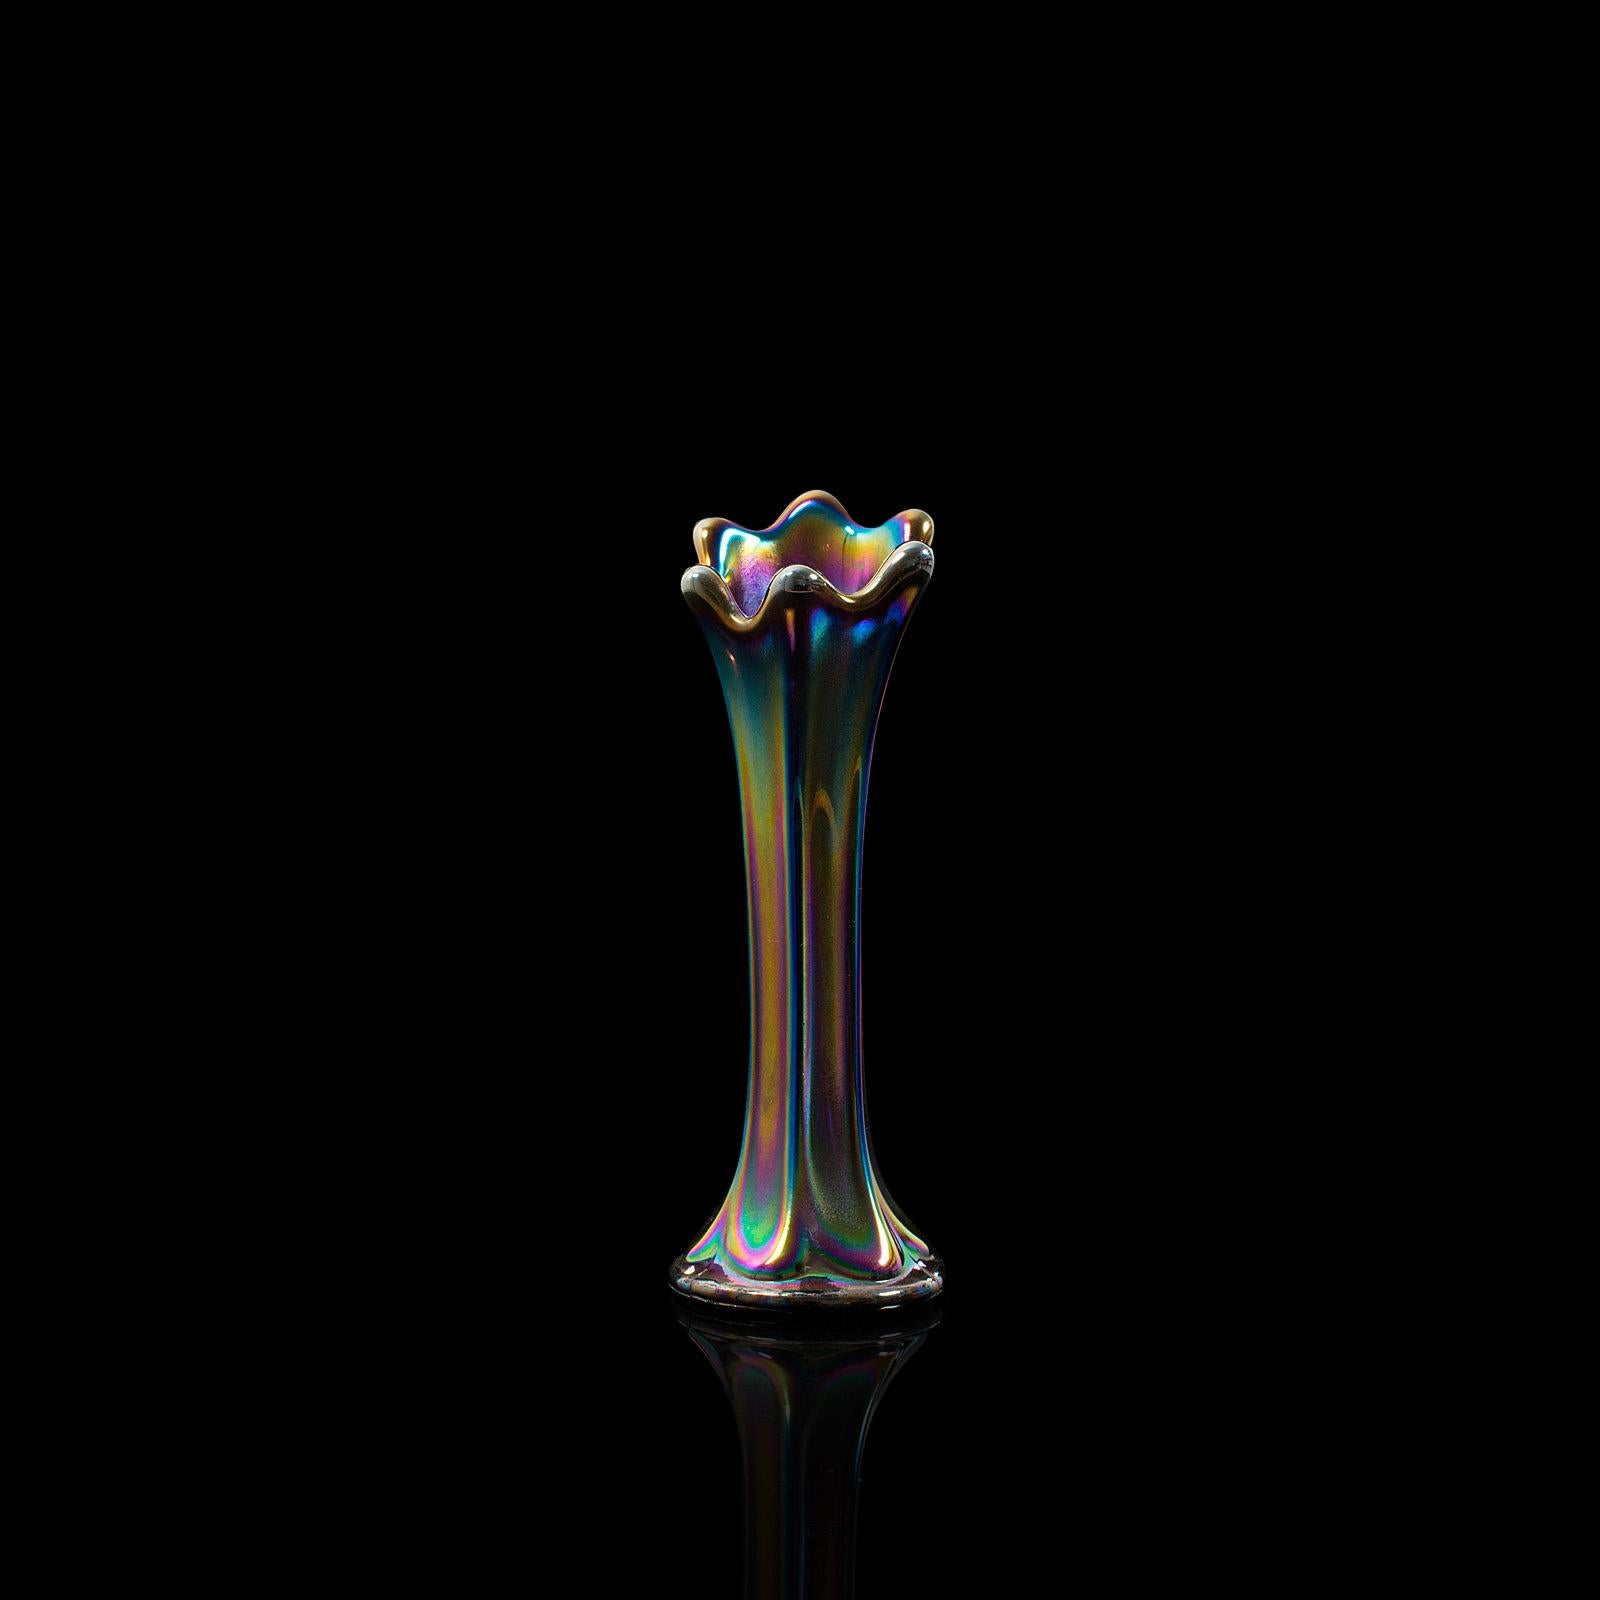 Dies ist eine kleine Vintage-Sträußchen-Vase. Eine englische, dekorative Blumenvase aus Karnevalsglas aus der Mitte des 20. Jahrhunderts, um 1950.

Schillernd schillerndes Spektrum
Mit wünschenswerter Alterspatina
Buntes Glas in sehr gutem